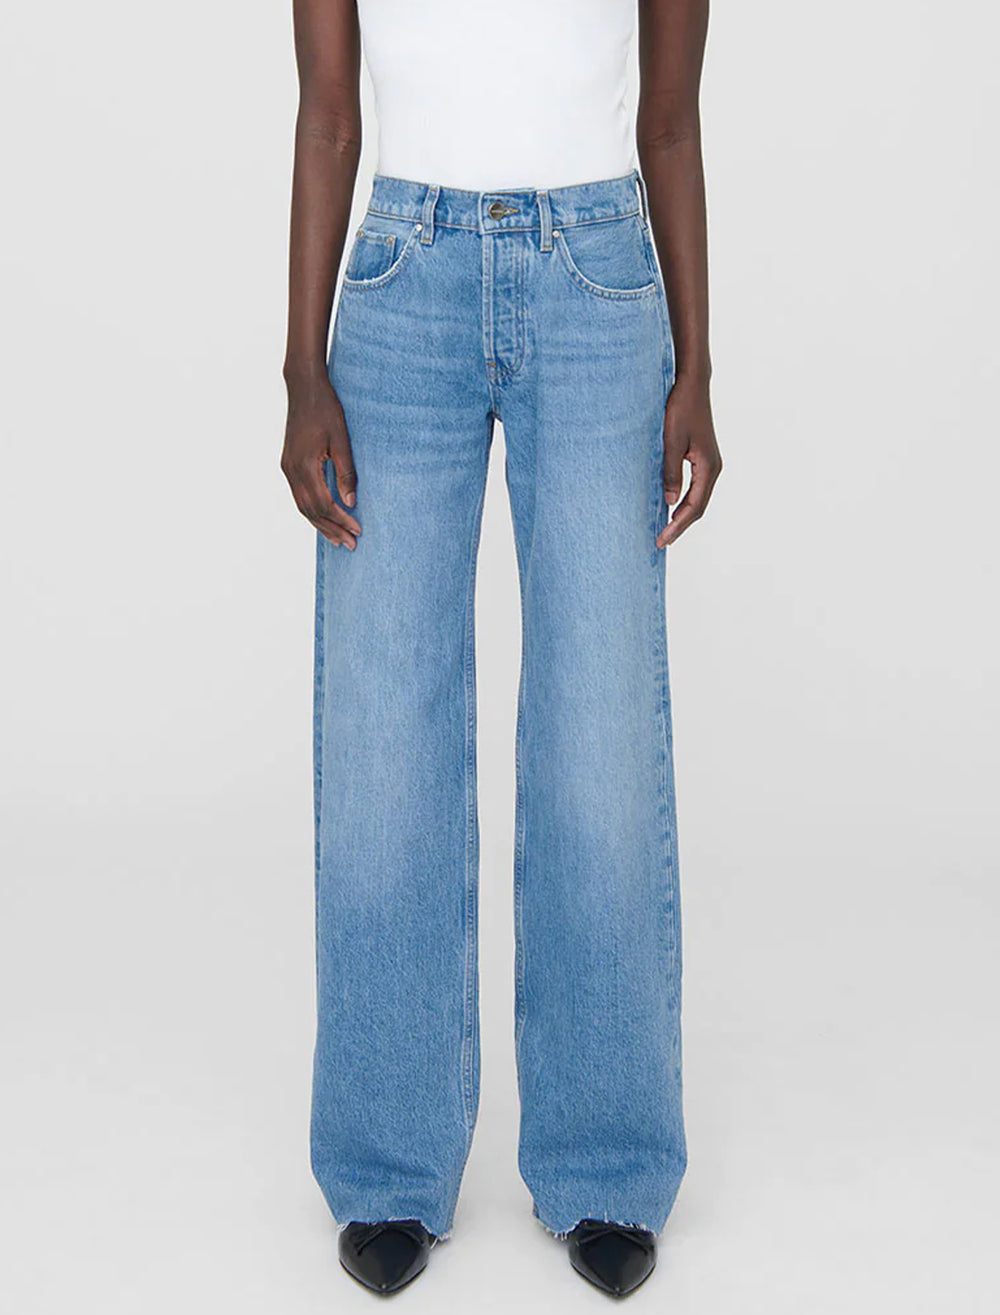 Model wearing Anine Bing's hugh jean in panama blue.